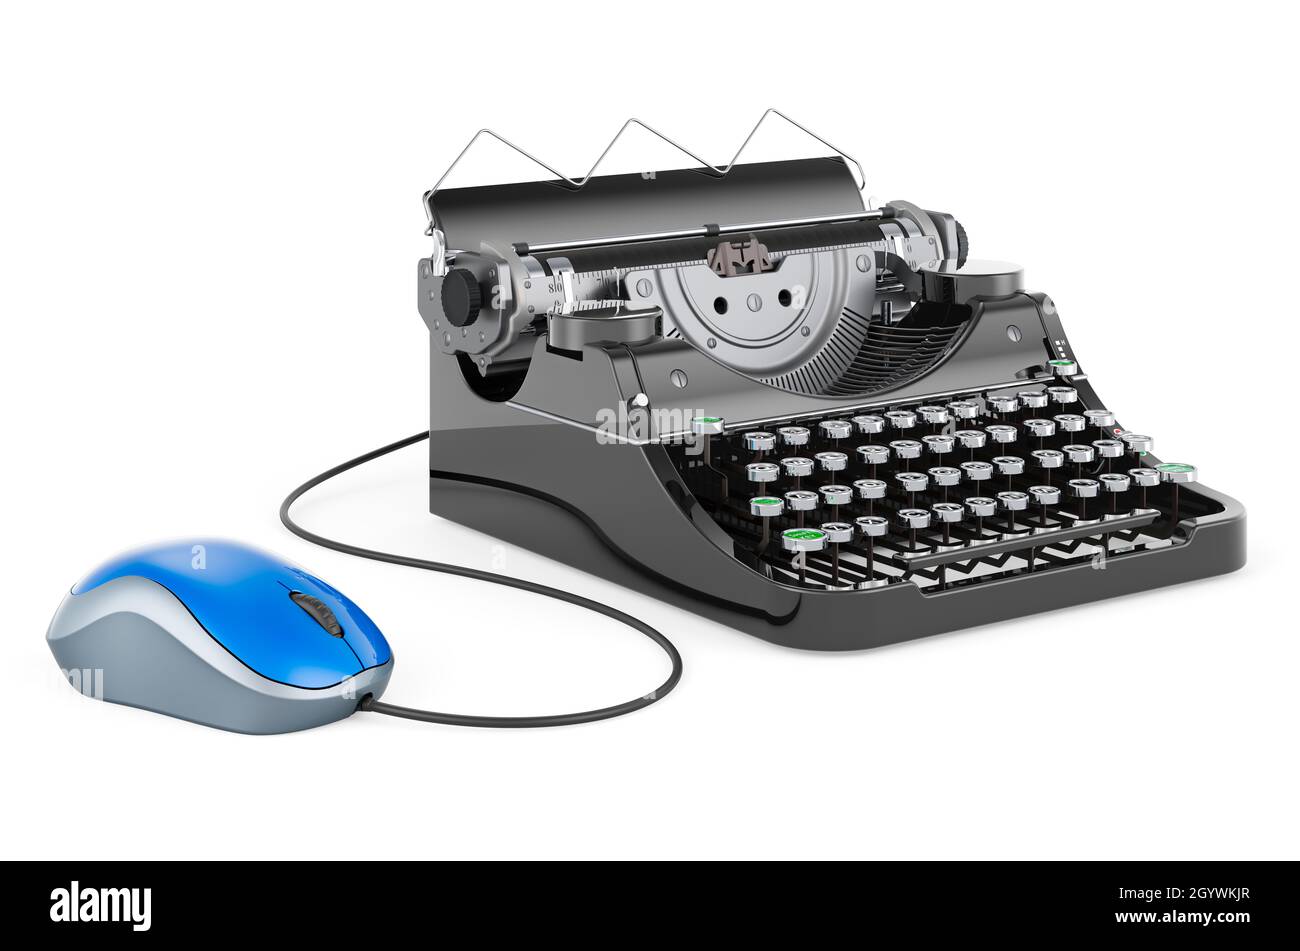 Macchina da scrivere con mouse per computer. Rendering 3D isolato su sfondo bianco Foto Stock